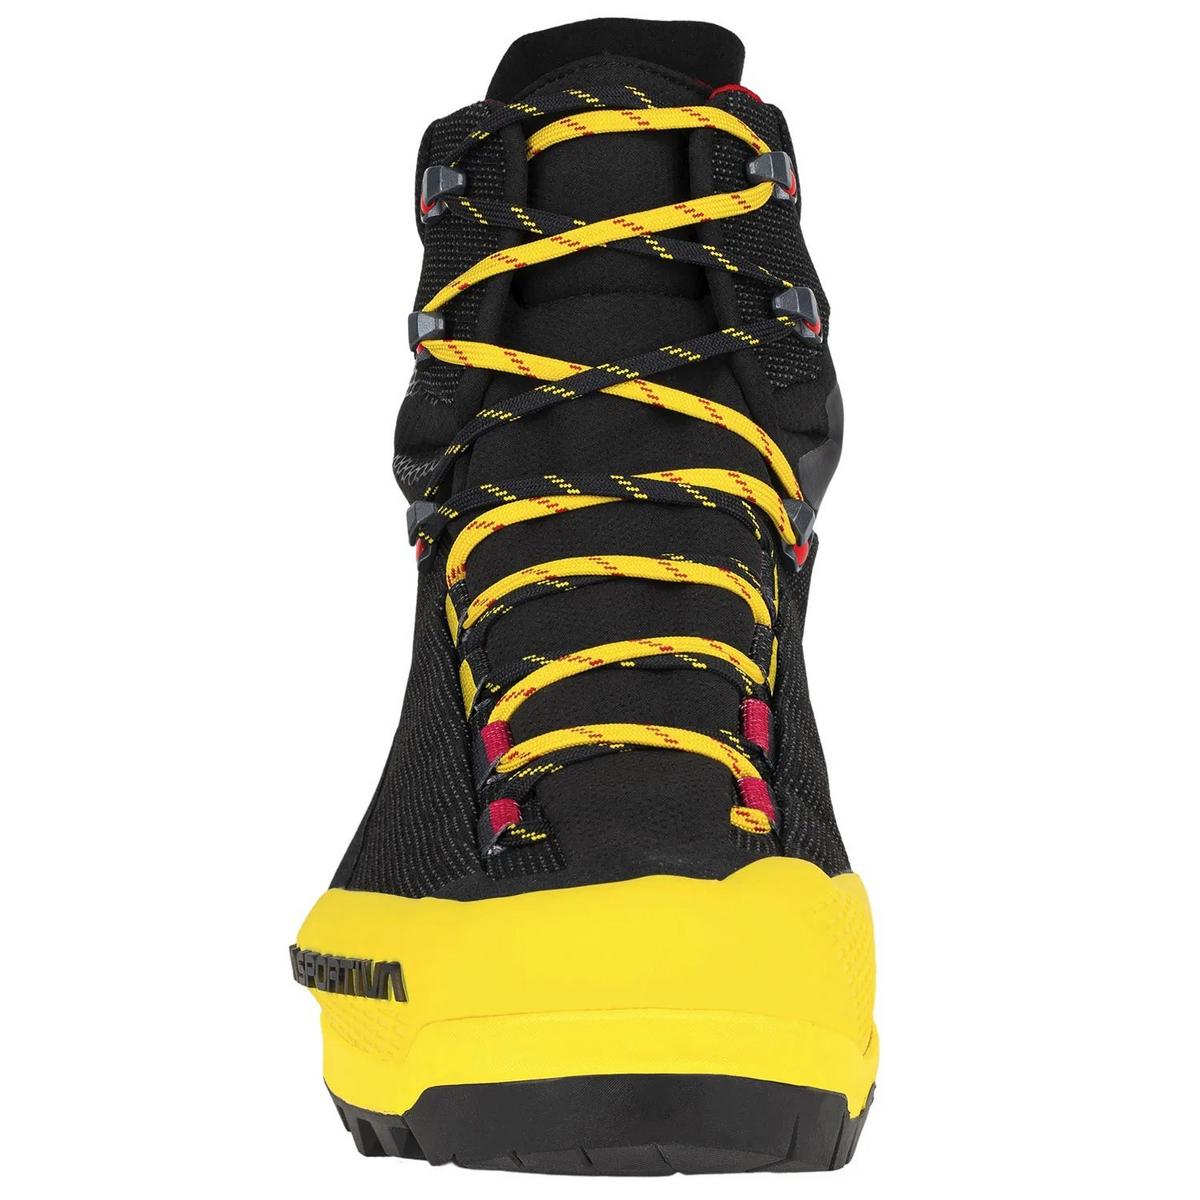 La Sportiva Men's Aequilibrium ST GORE-TEX -Mountaineering Boots